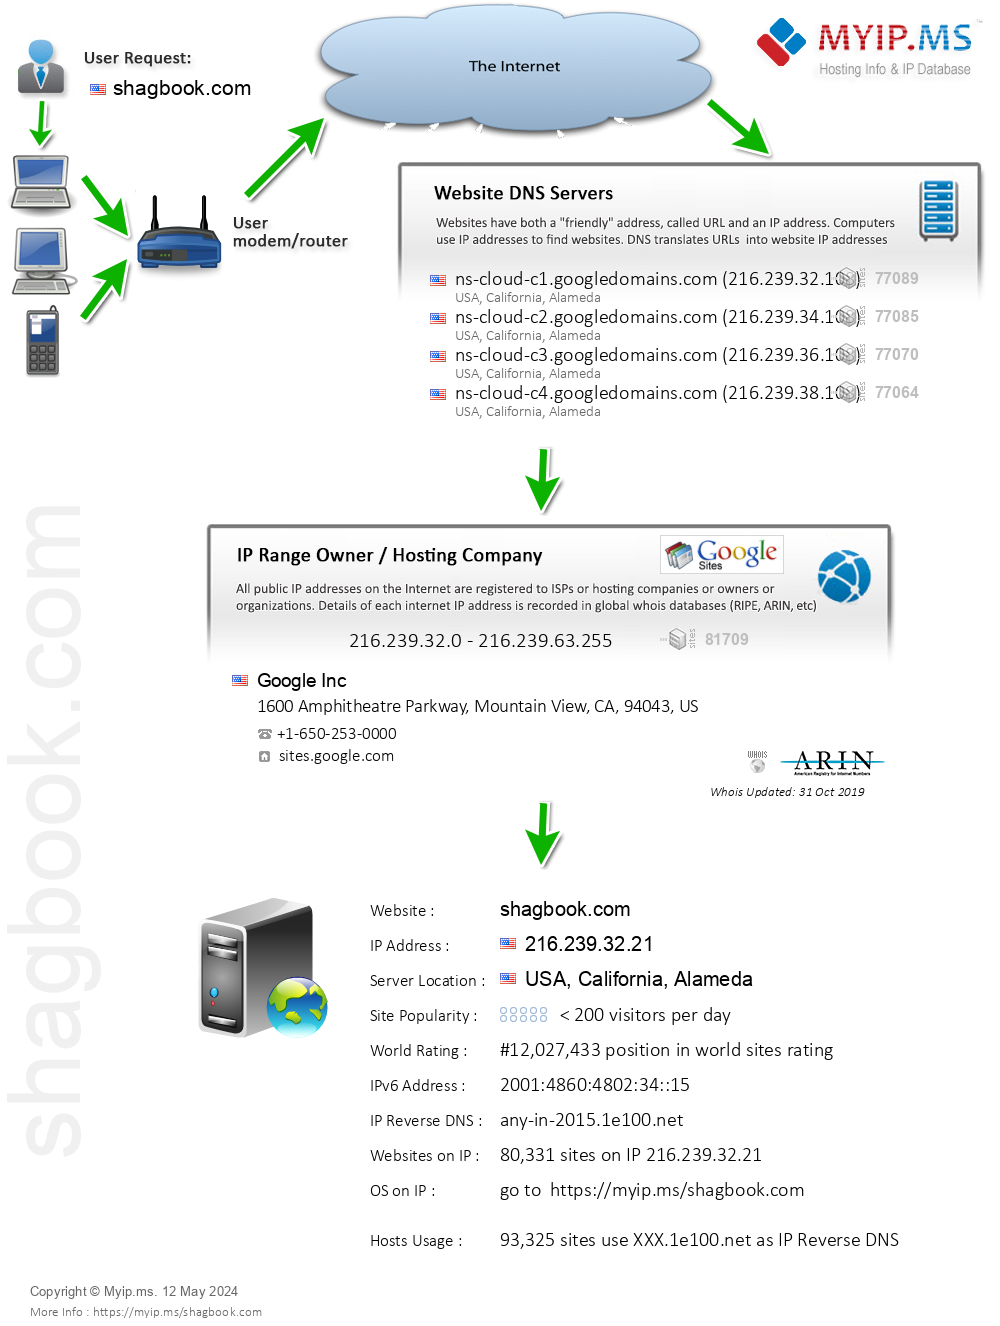 Shagbook.com - Website Hosting Visual IP Diagram